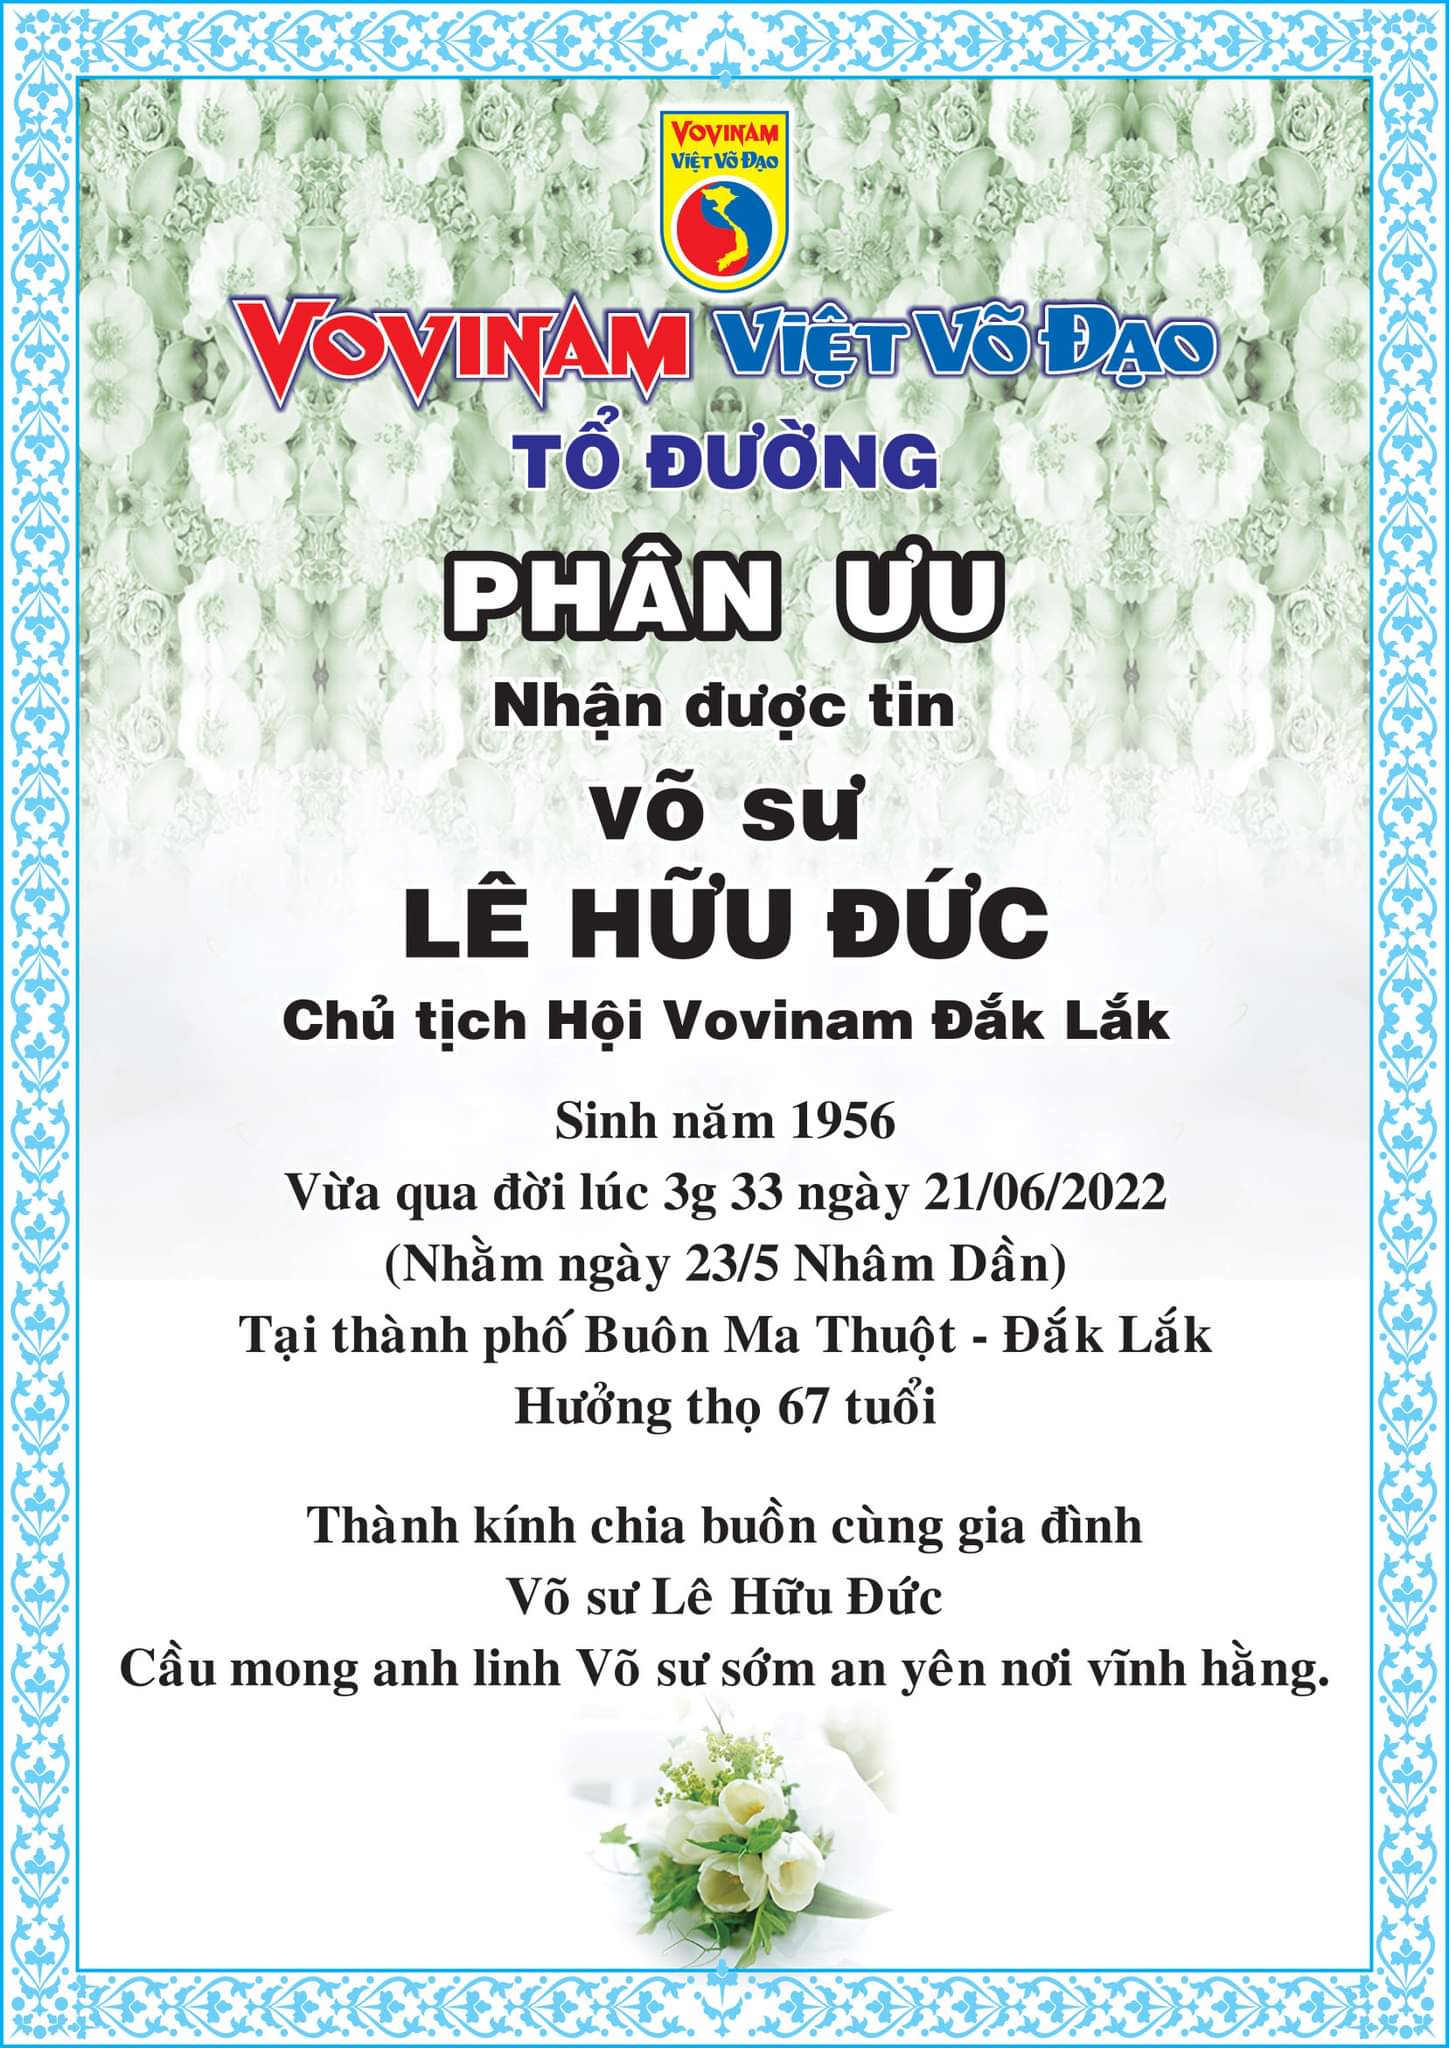 Vĩnh biệt thầy Lê Hữu Đức - Chủ tịch HỘI VOVINAM ĐẮKLẮK - Adieu à notre Maitre Lê Hữu Đức - Président de l'Association VoViNam DakLak province.